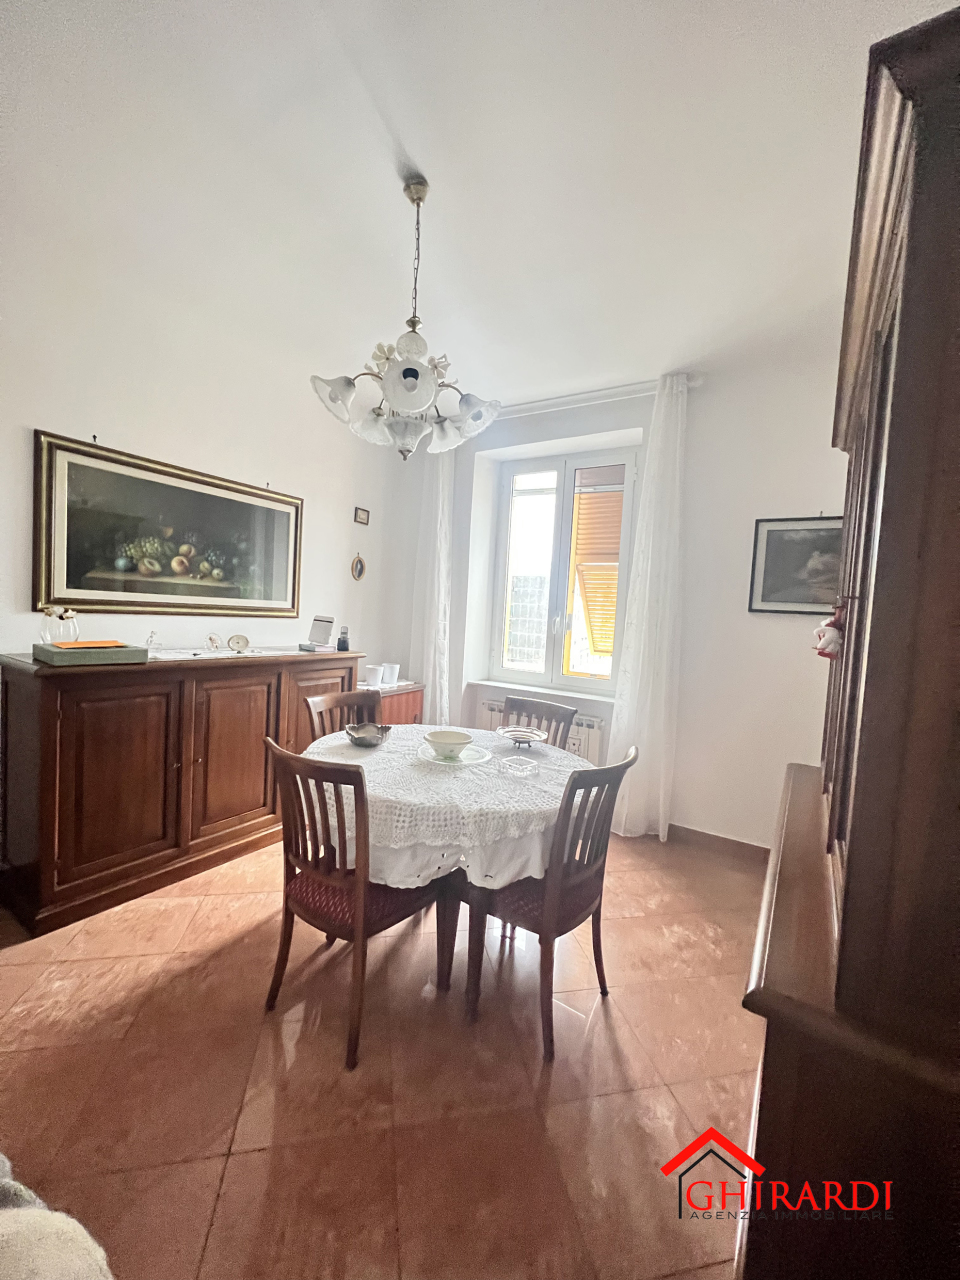 Appartamento in affitto a Genova, 6 locali, prezzo € 800 | PortaleAgenzieImmobiliari.it